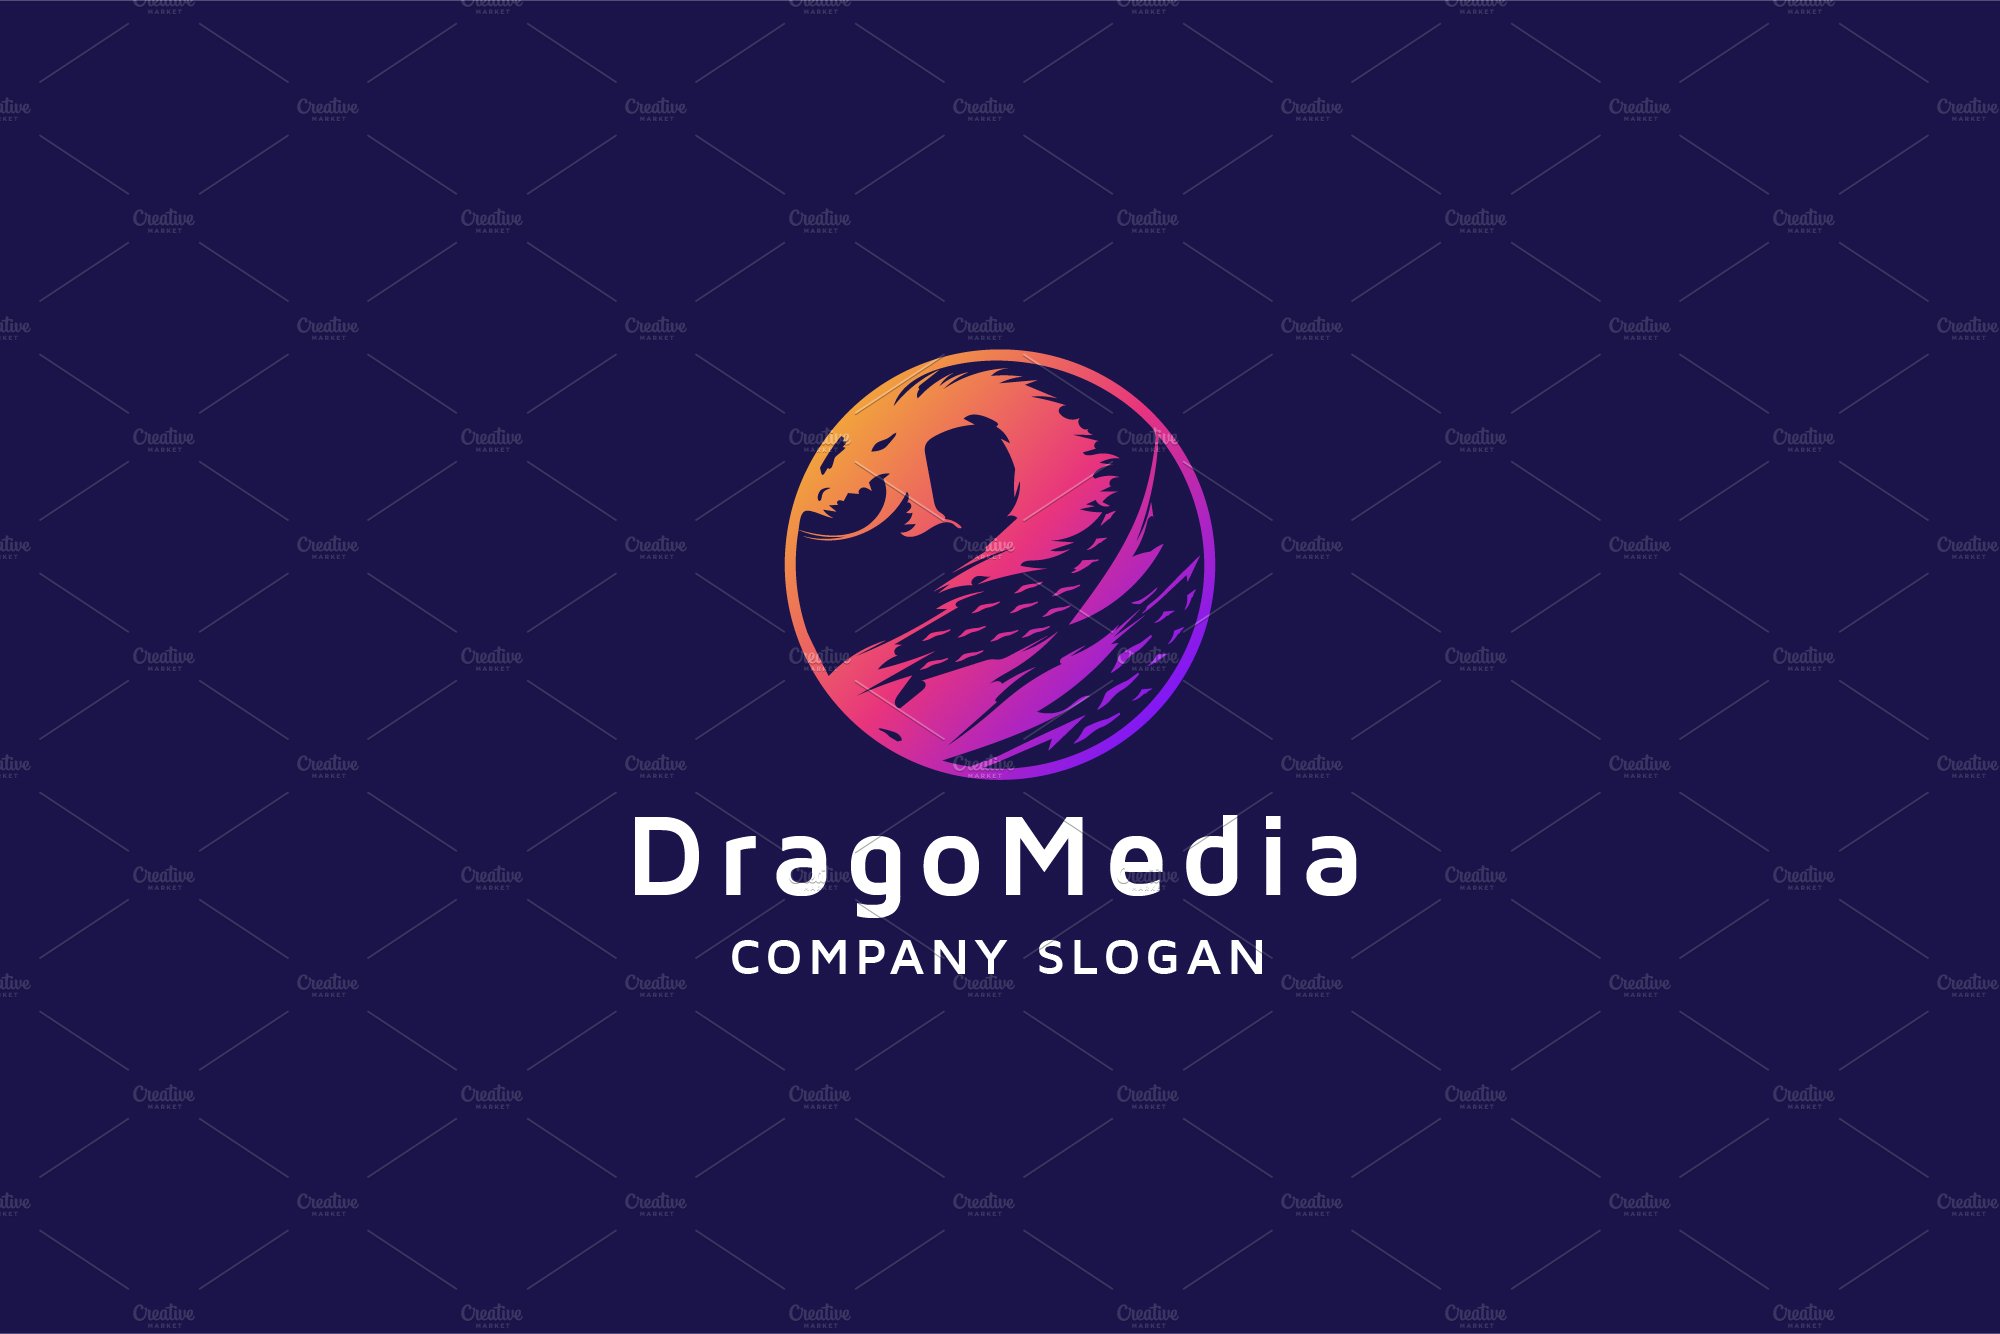 Drago Media Logo cover image.